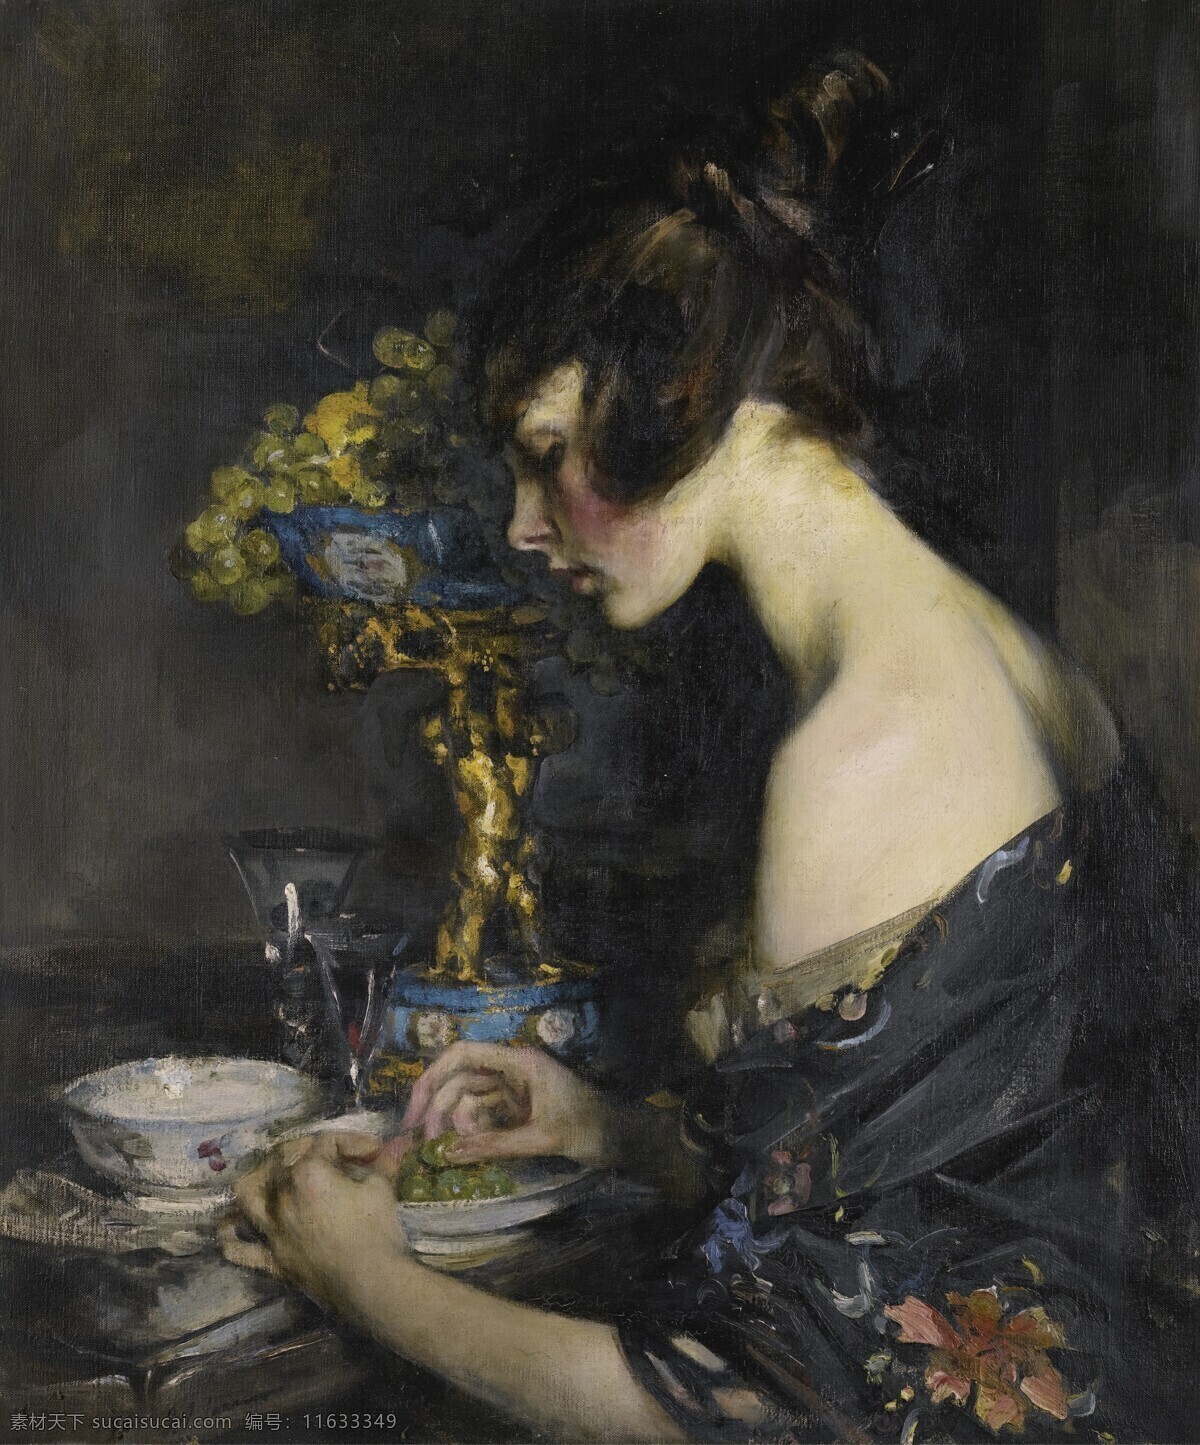 茶杯 瓷器 花瓶 绘画书法 女子 文化艺术 鲜花 女子设计素材 女子模板下载 少妇 摆弄 19世纪油画 油画 家居装饰素材